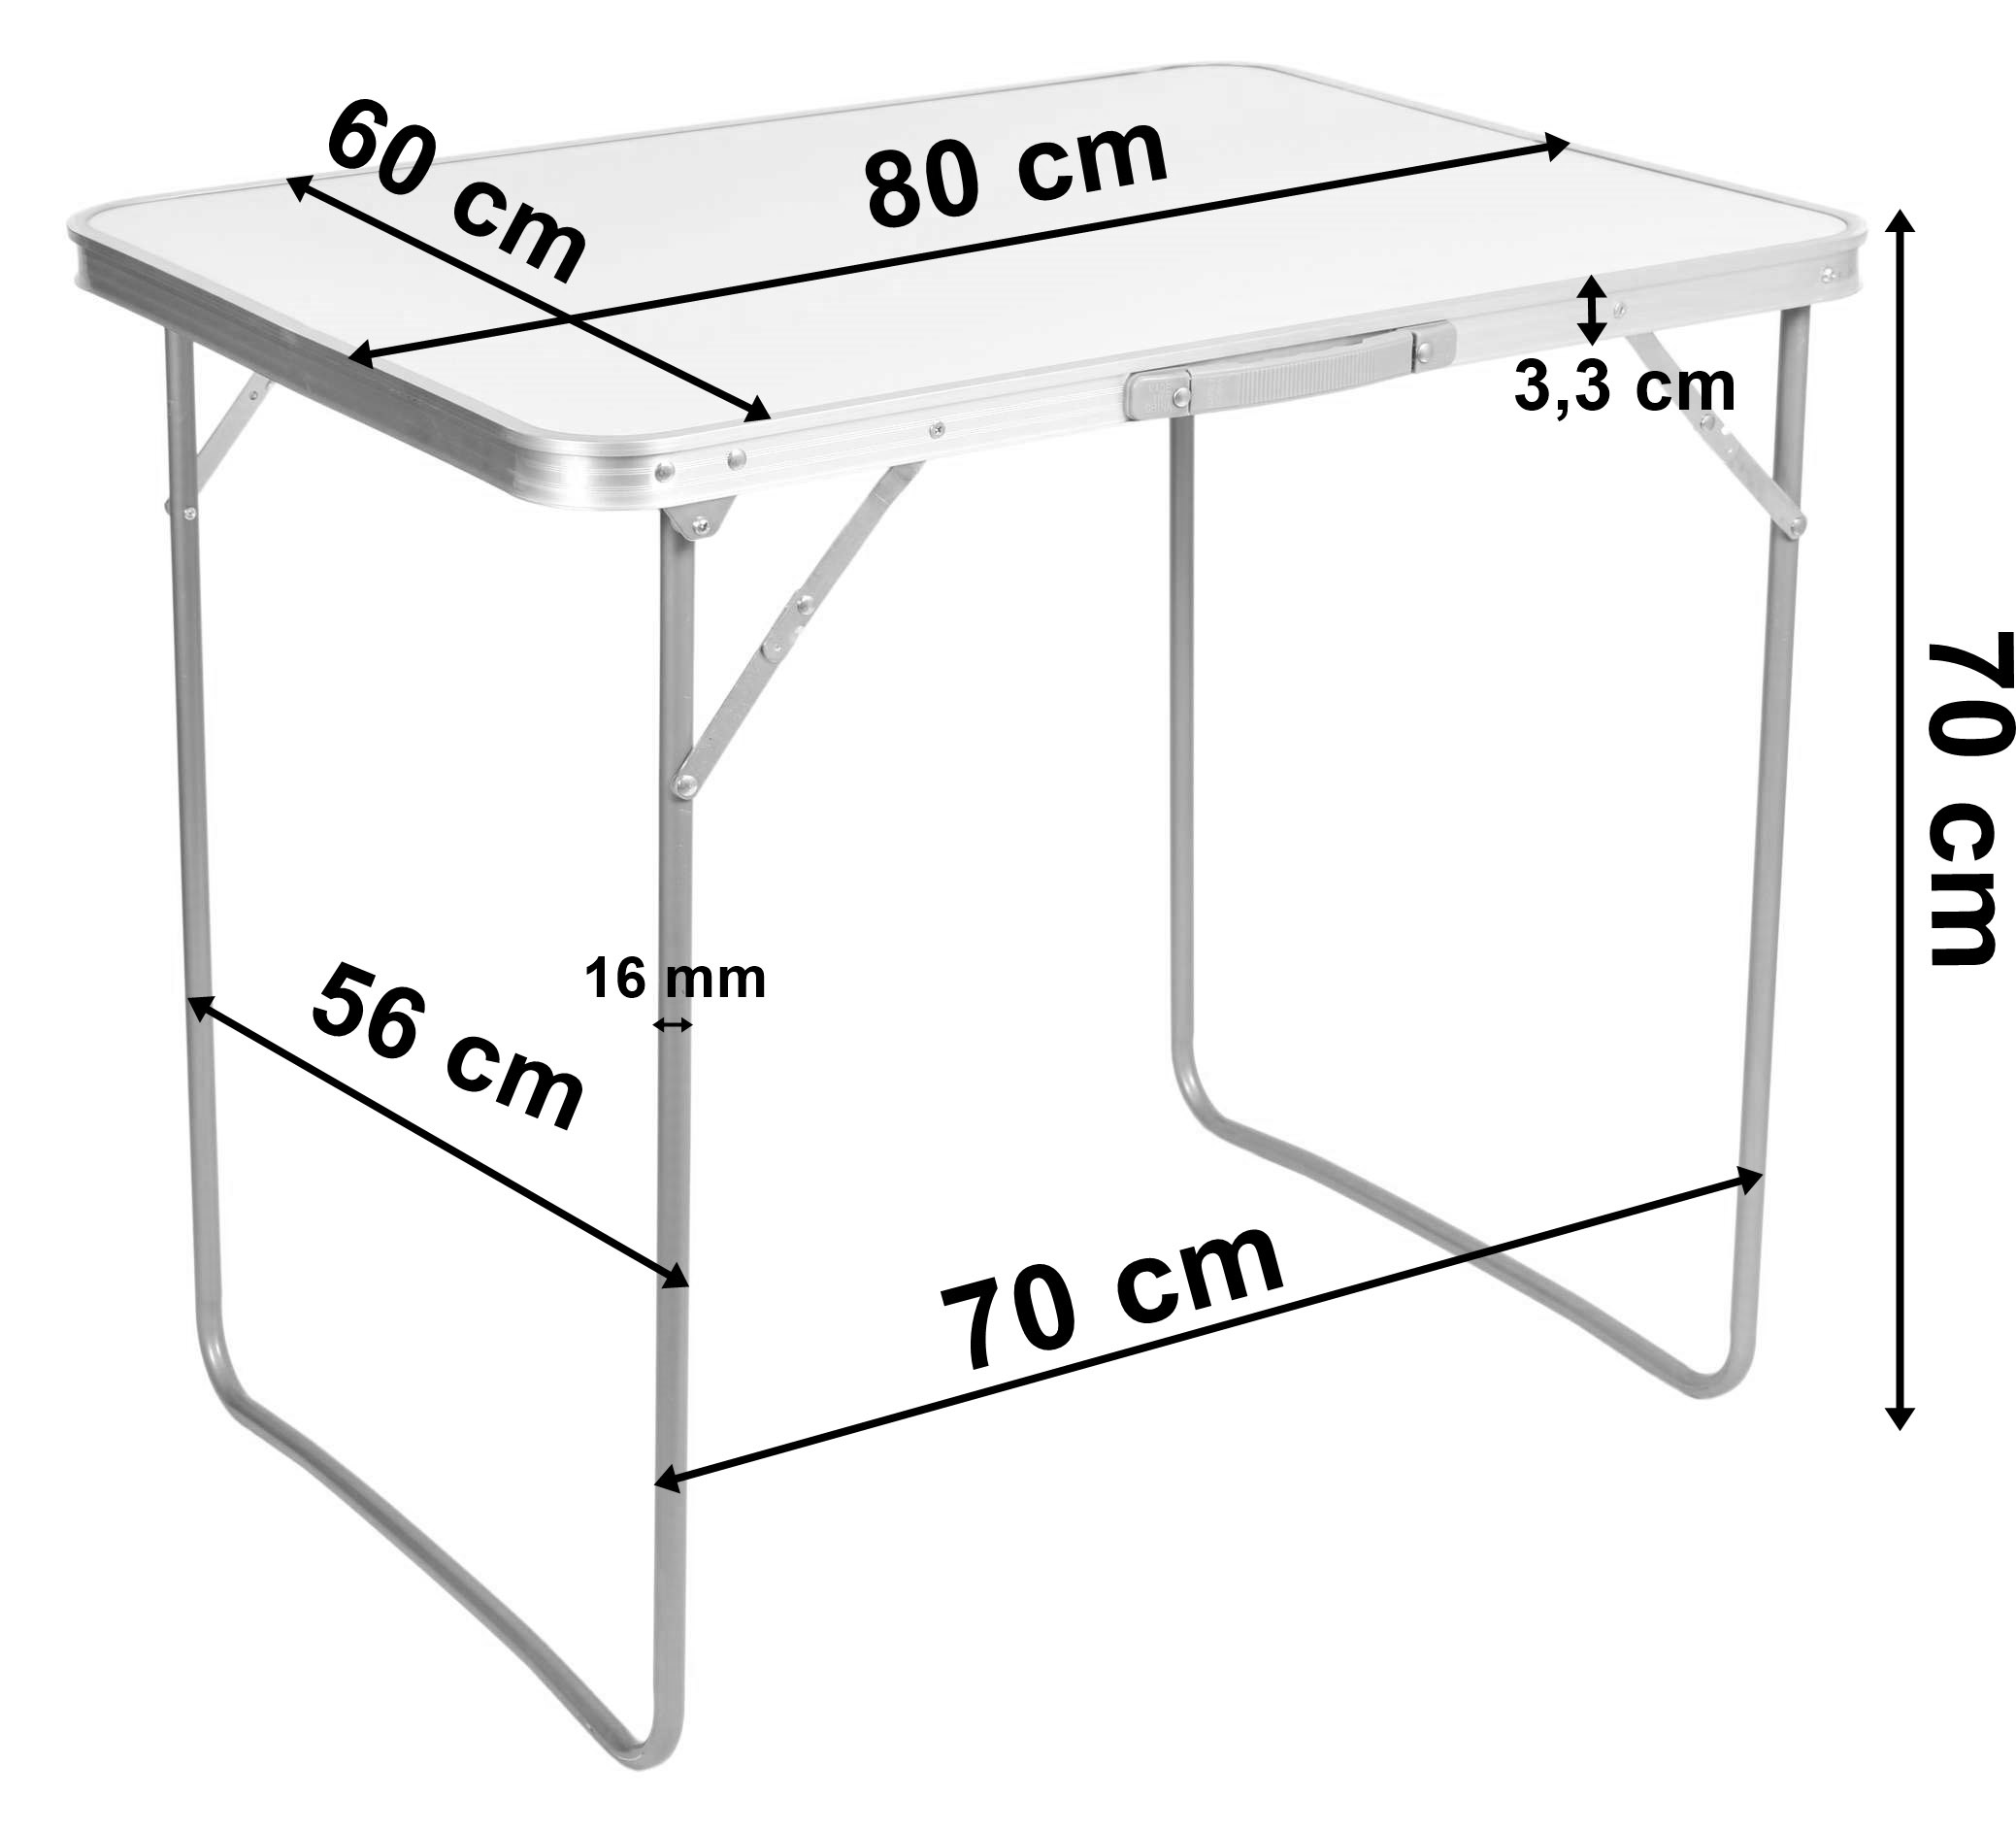 Stół turystyczny CORN składany 80x60 cm biały